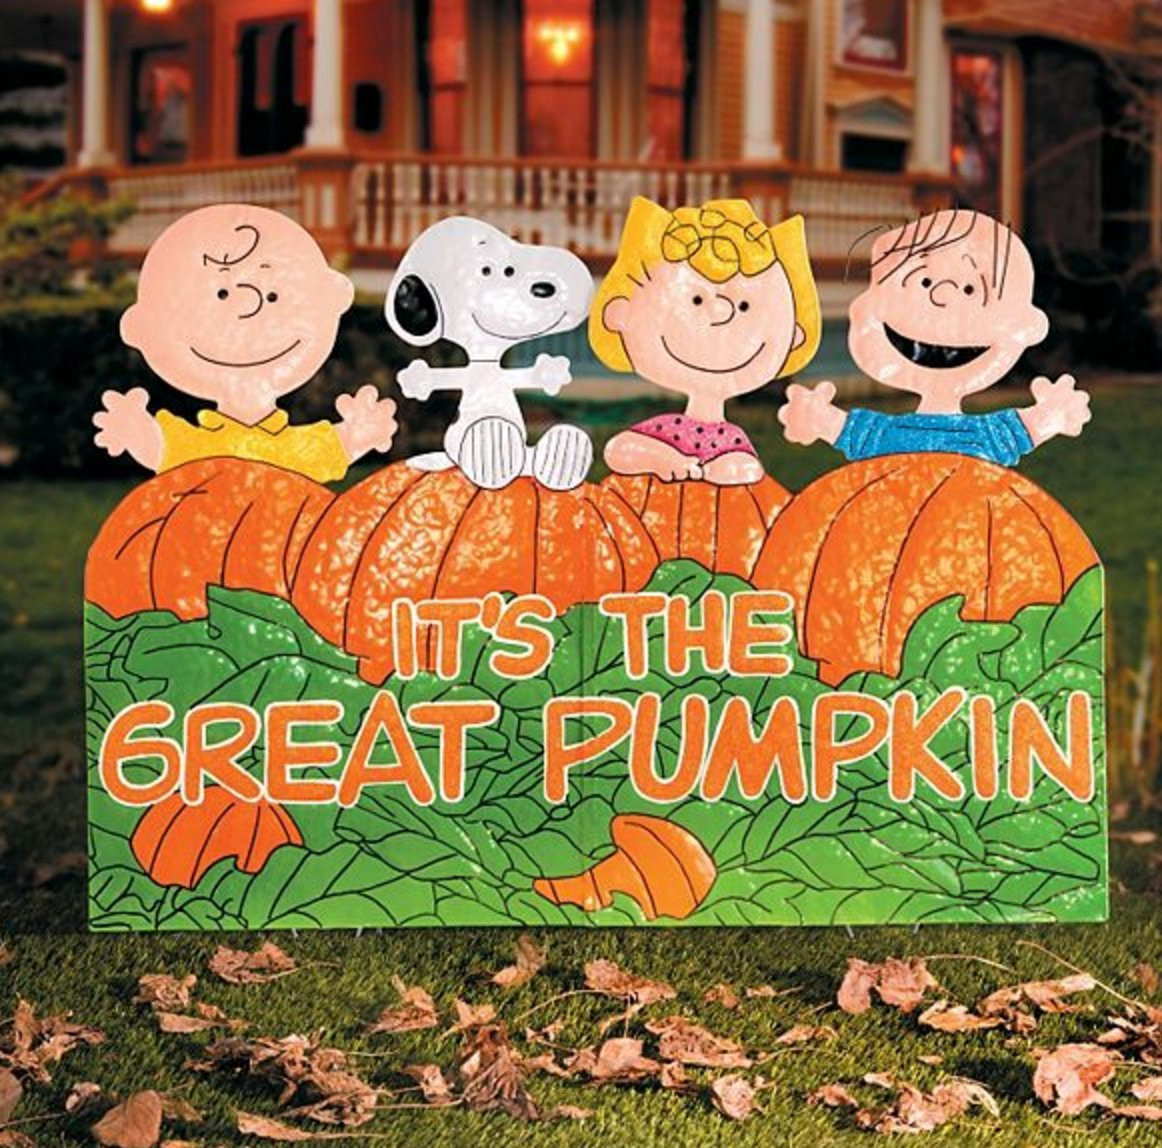 Great Pumpkin Charlie Brown Halloween Decorations Combo Five 